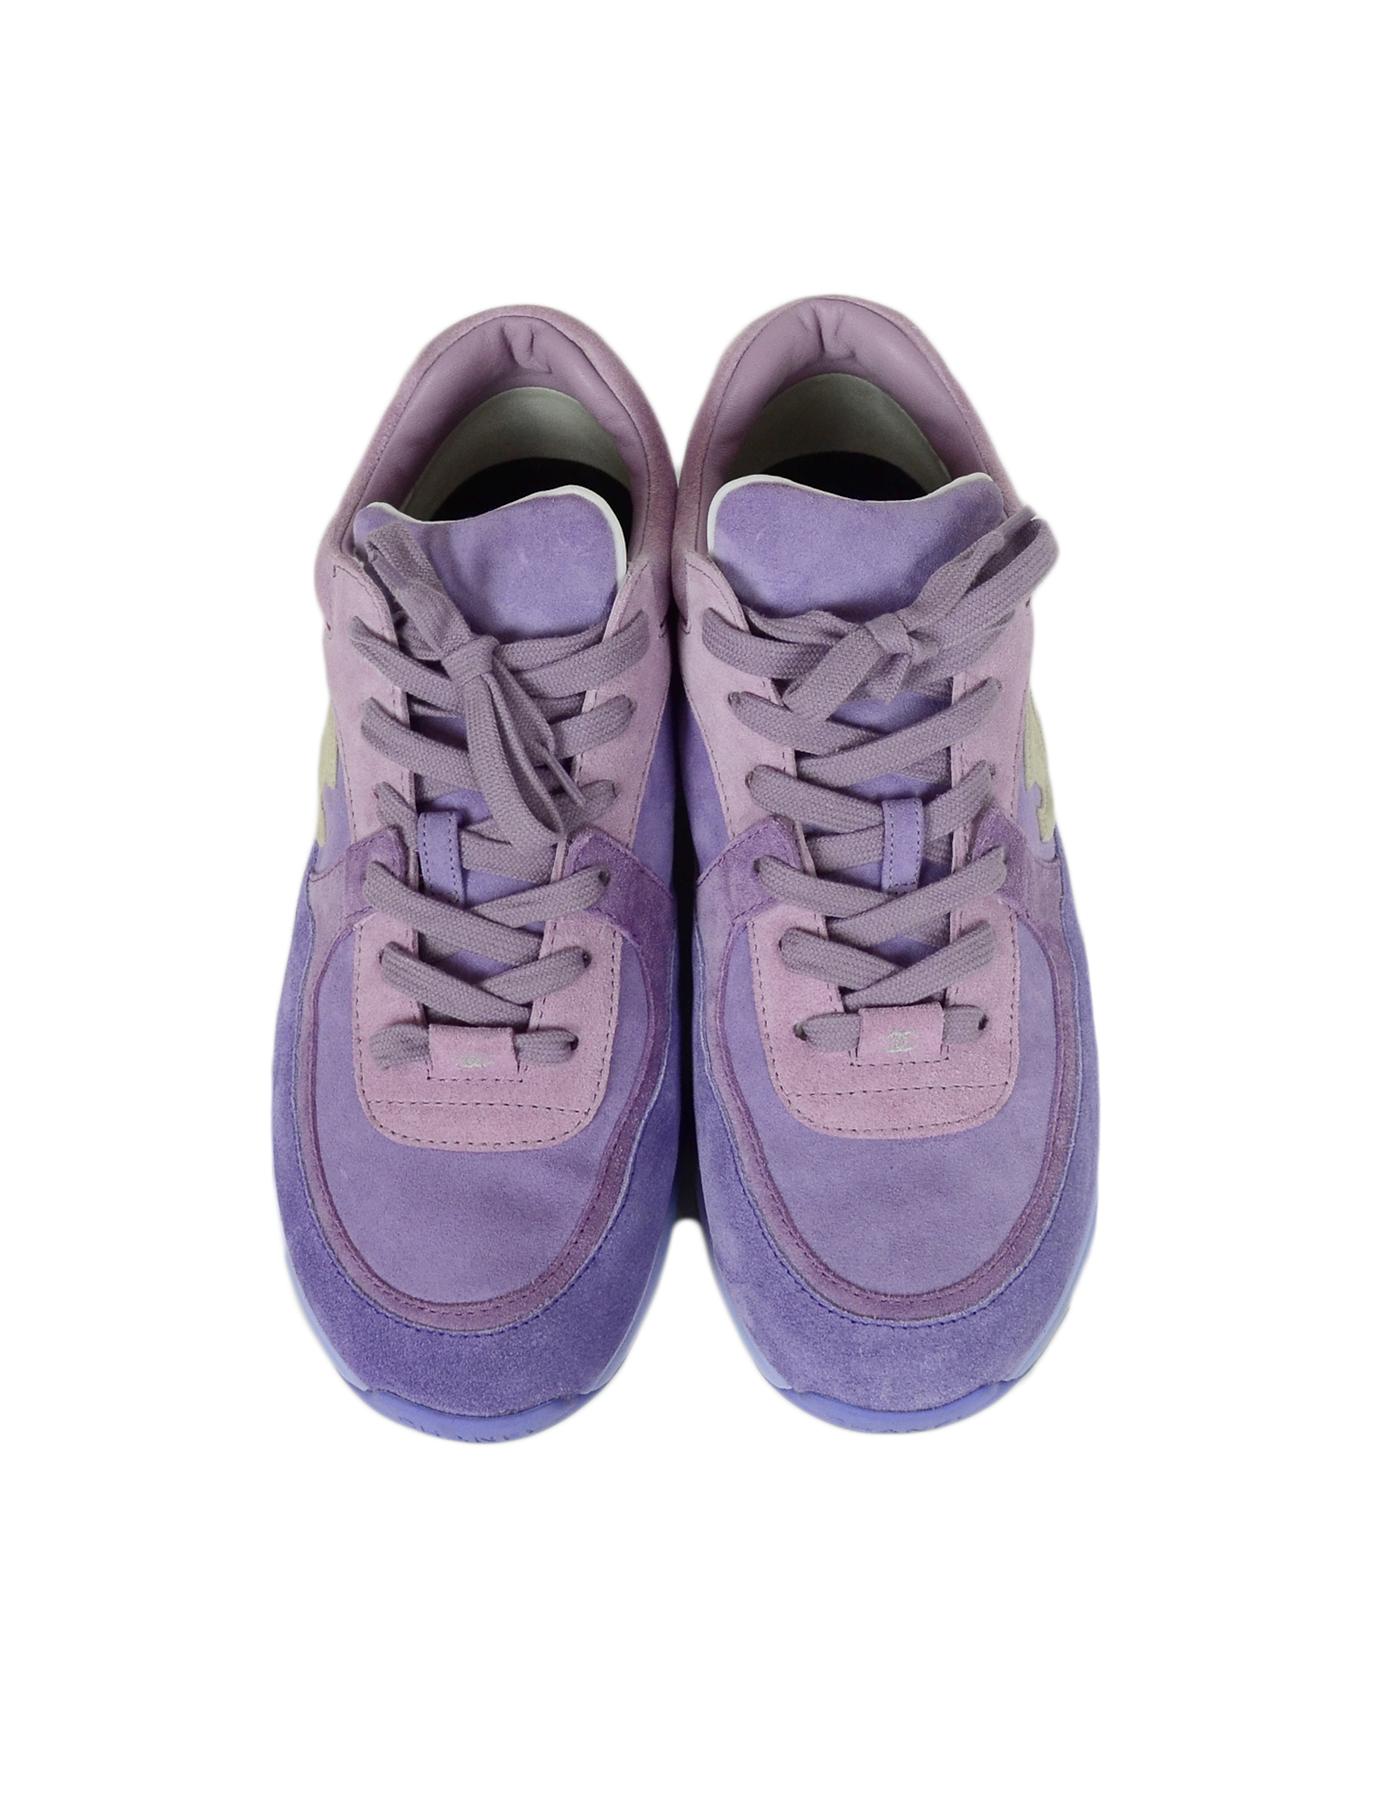 chanel purple sneakers